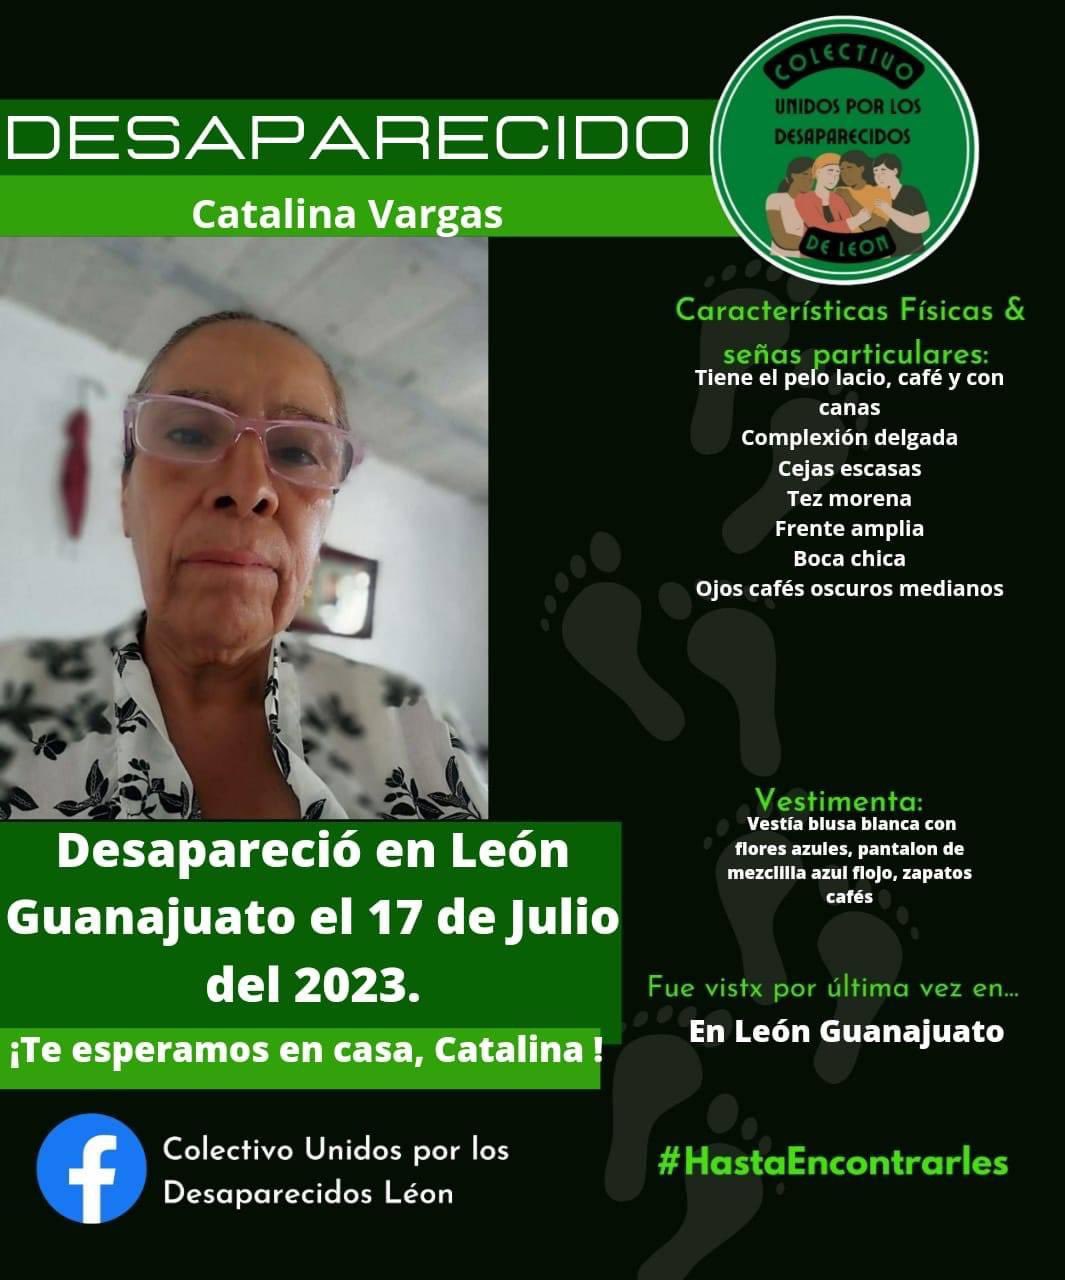 La buscadora Catalina Vargas está desaparecida desde el pasado 17 de julio en León, Guanajuato